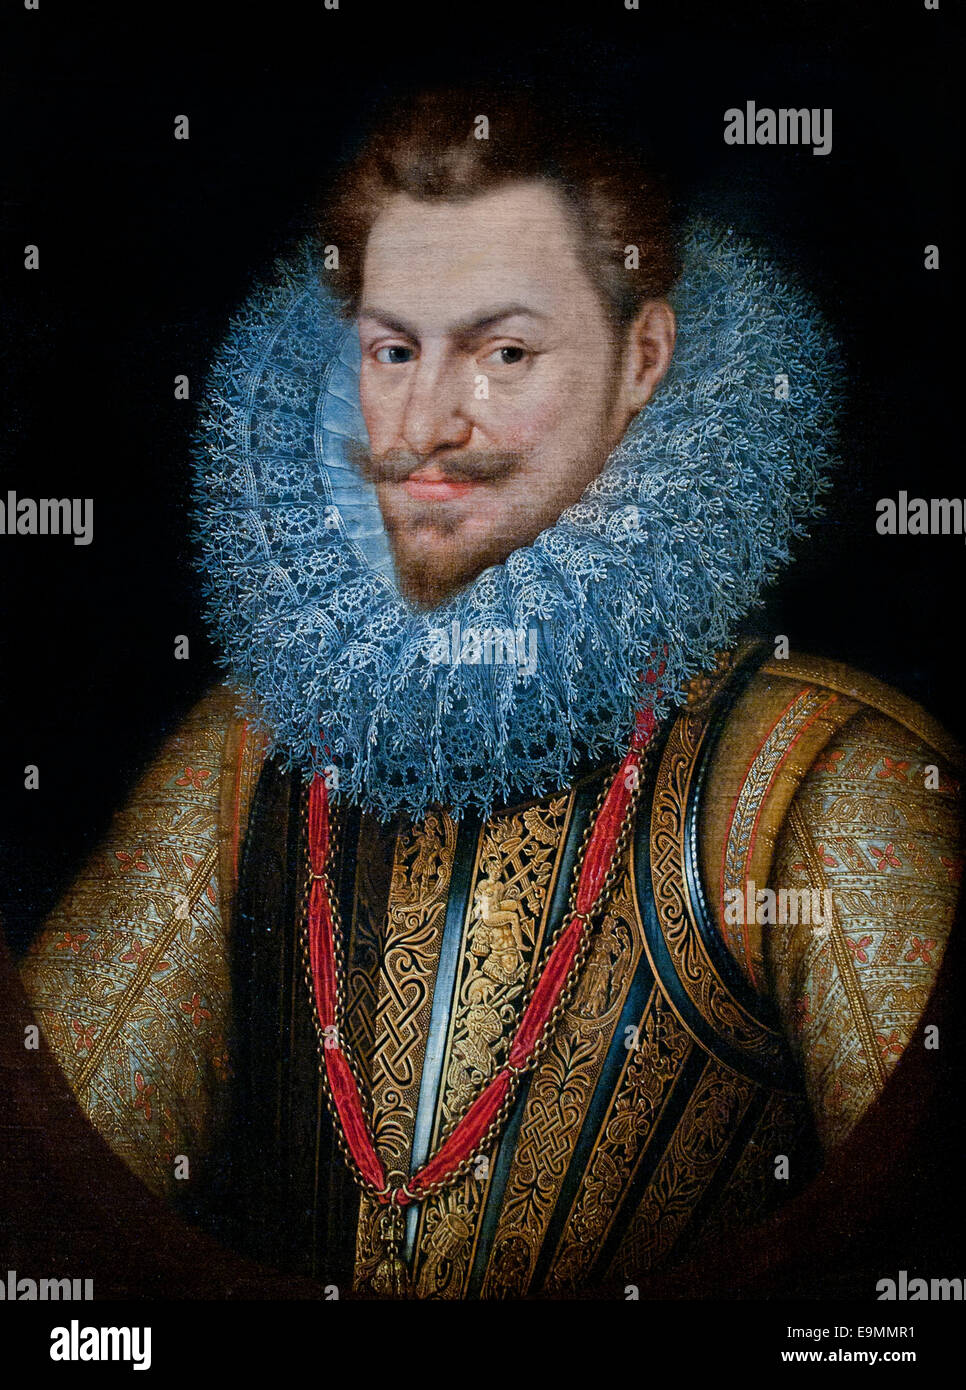 El archiduque Alberto de Austria, Gobernador del Netherlandby Frans POURBUS el viejo 1545 - 1603 holandés belga Bélgica Países Bajos Foto de stock